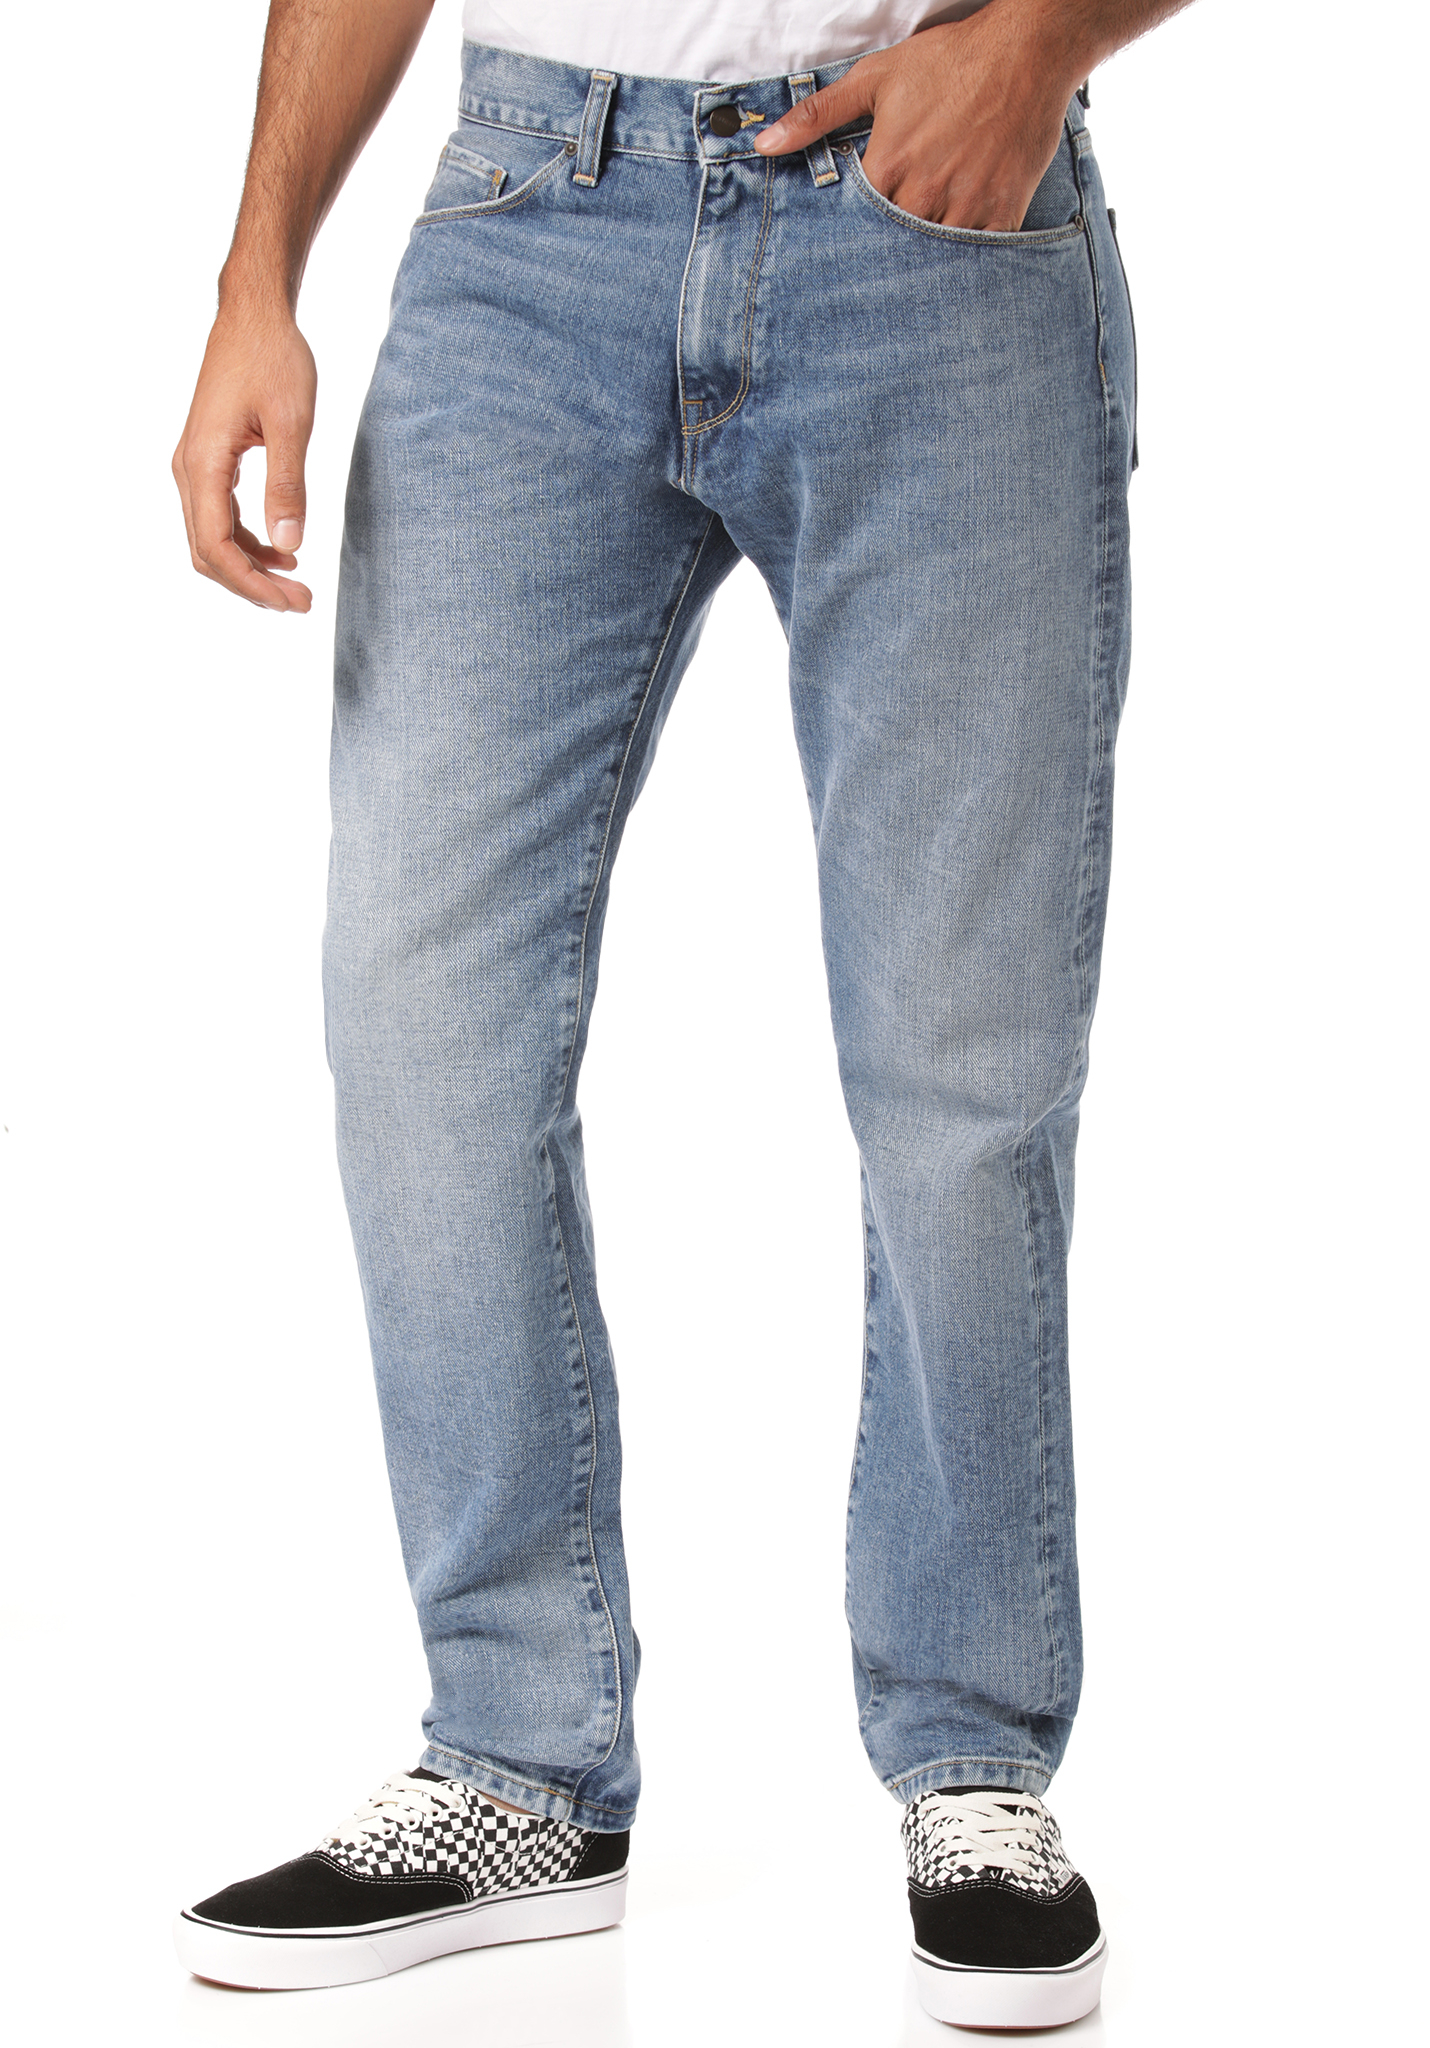 Carhartt WIP Vicious Jeans blau 38/34